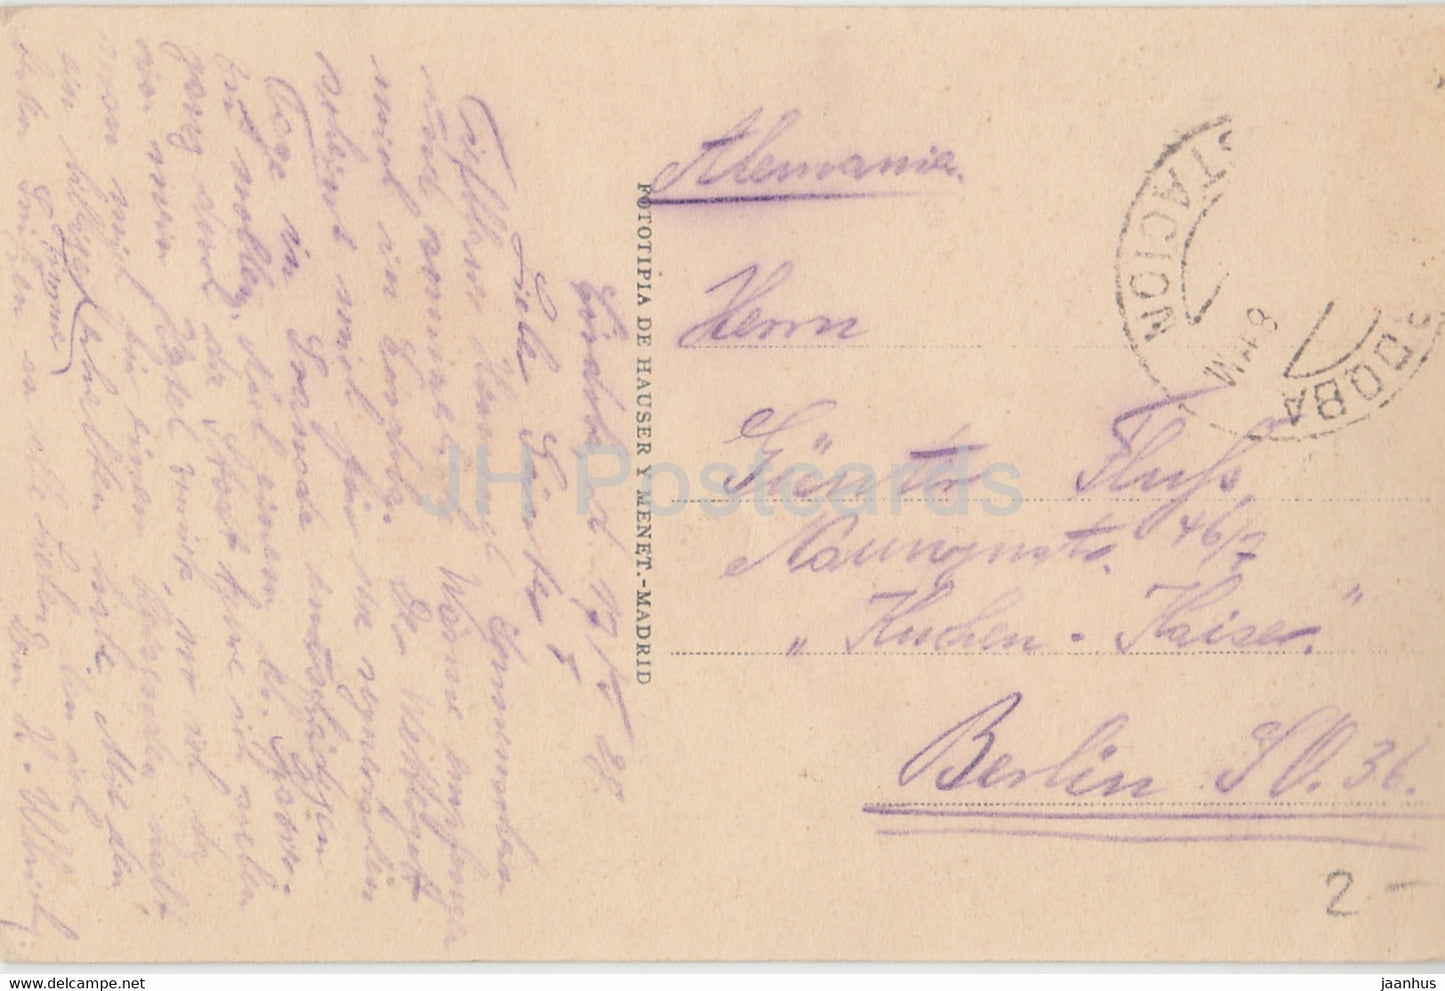 Cordoba - Torre de Carraola y Puente Romano - old postcard - 1928 - Spain - used